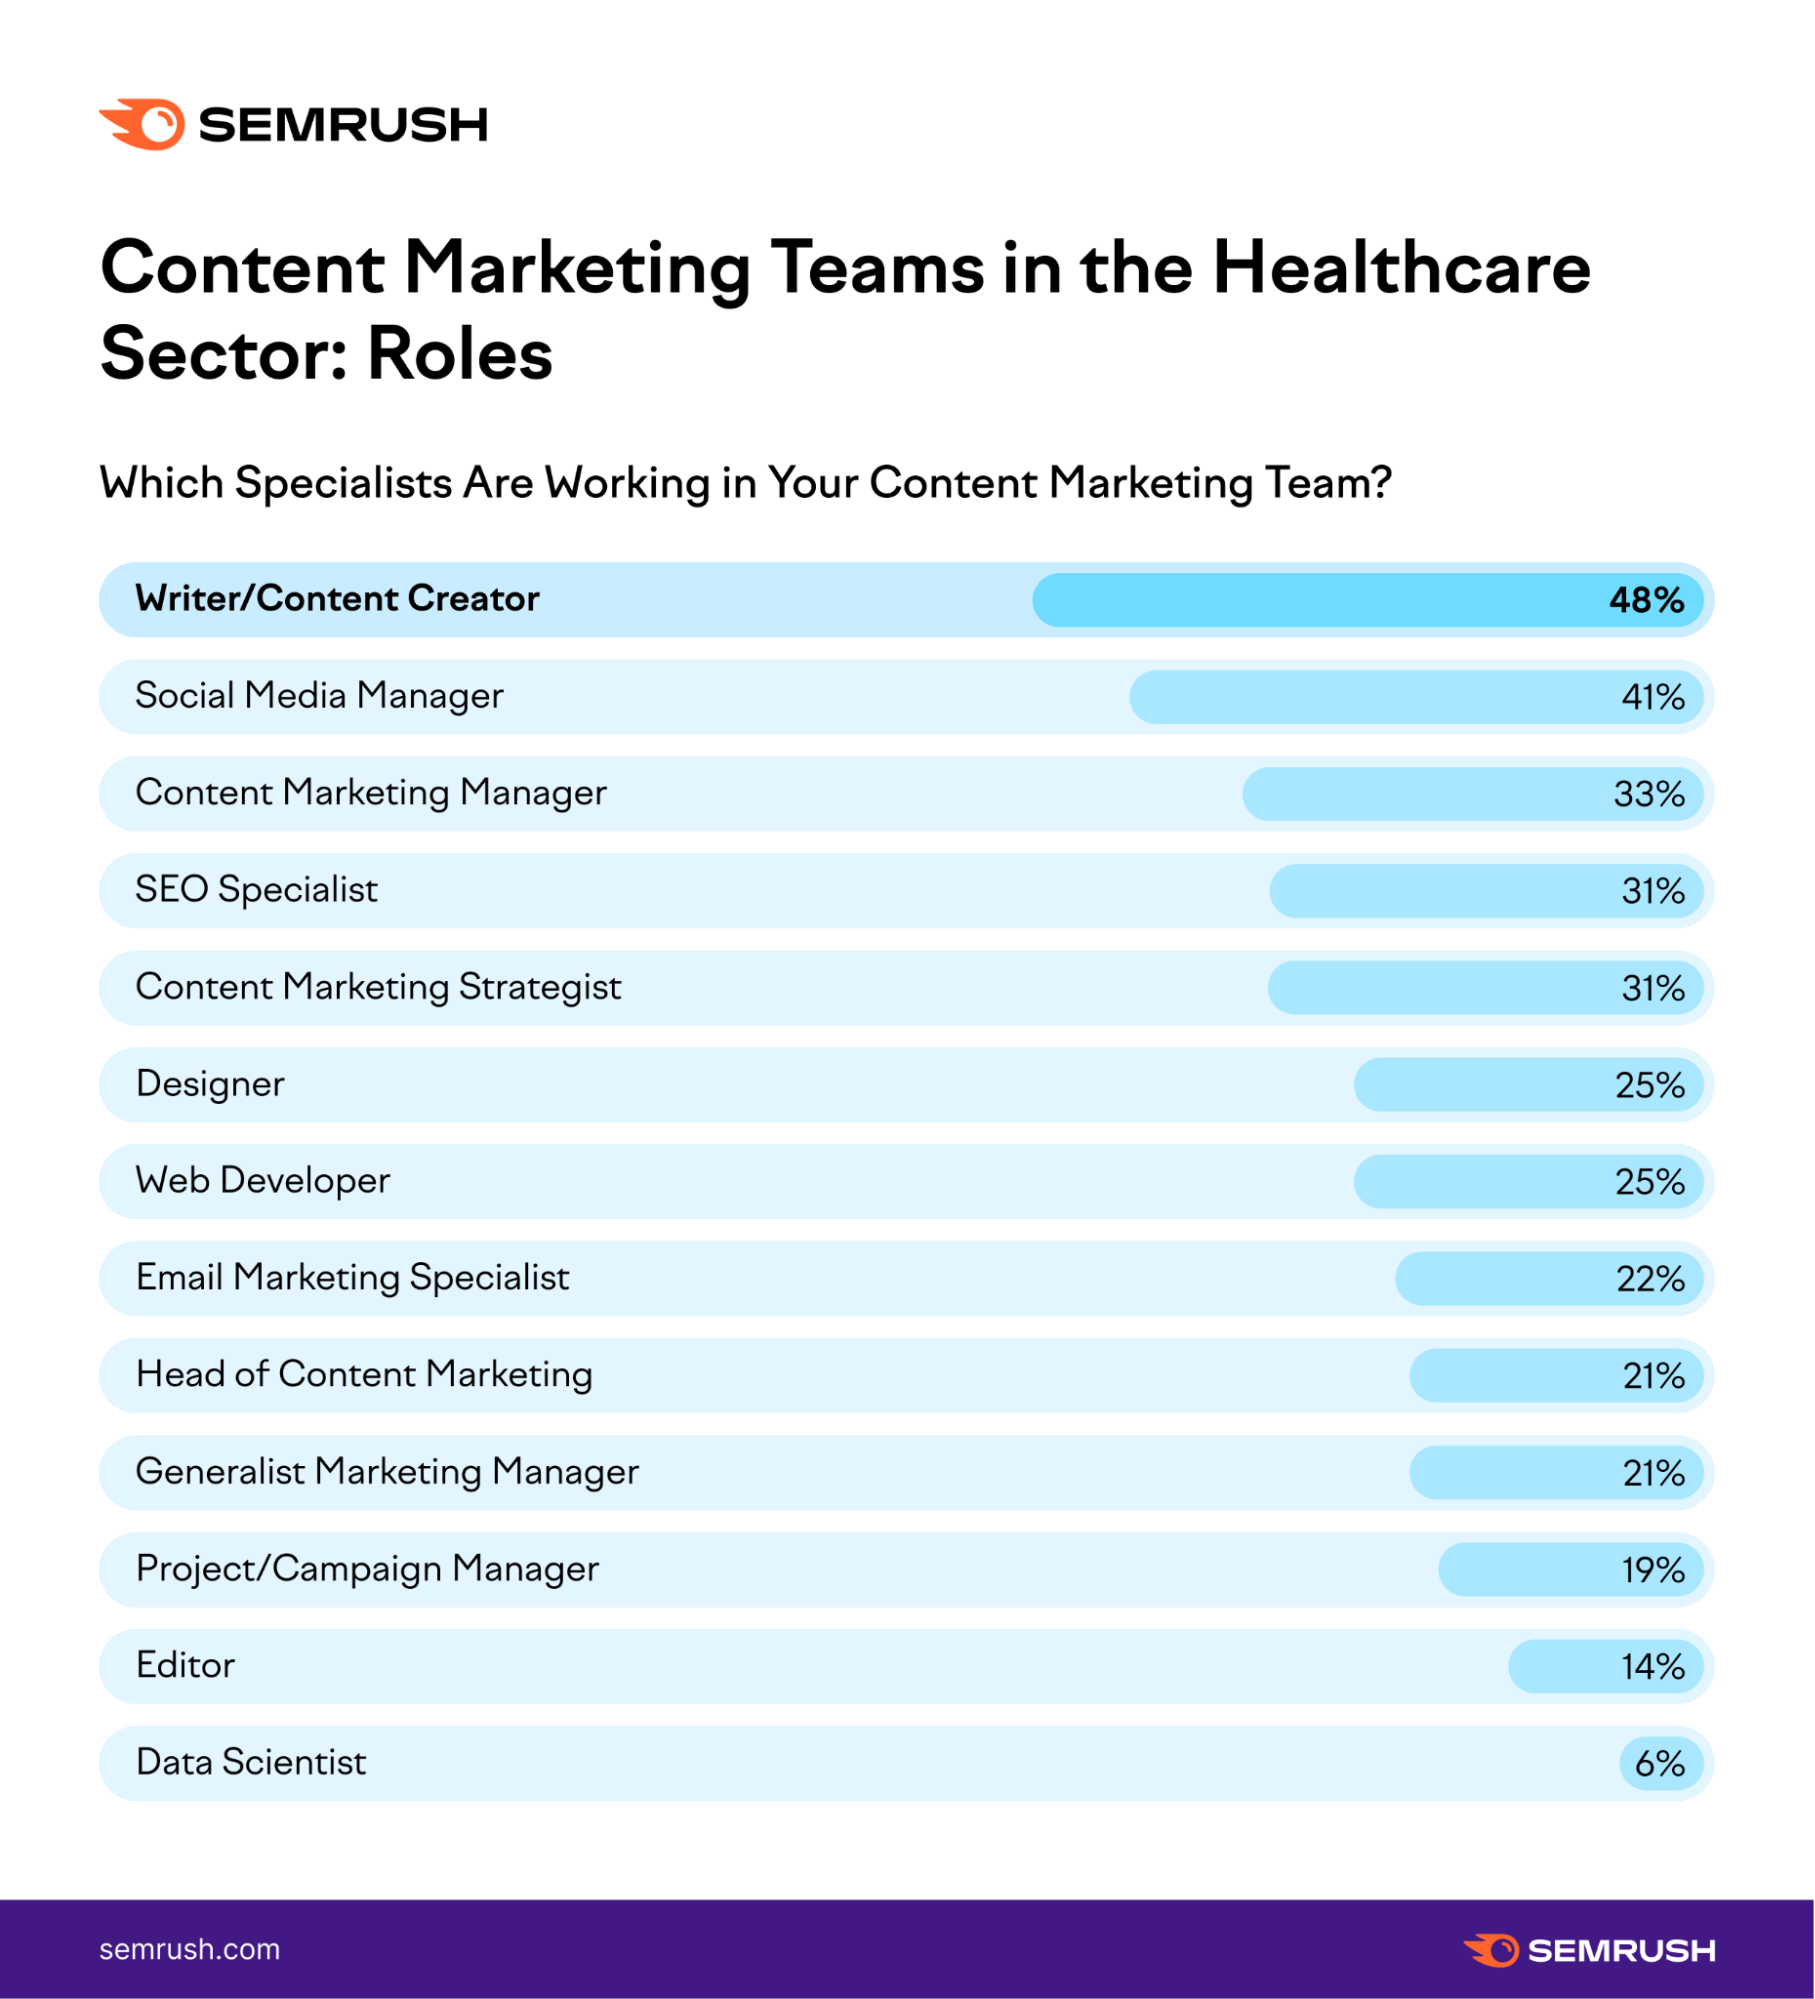 Healthcare content marketing teams